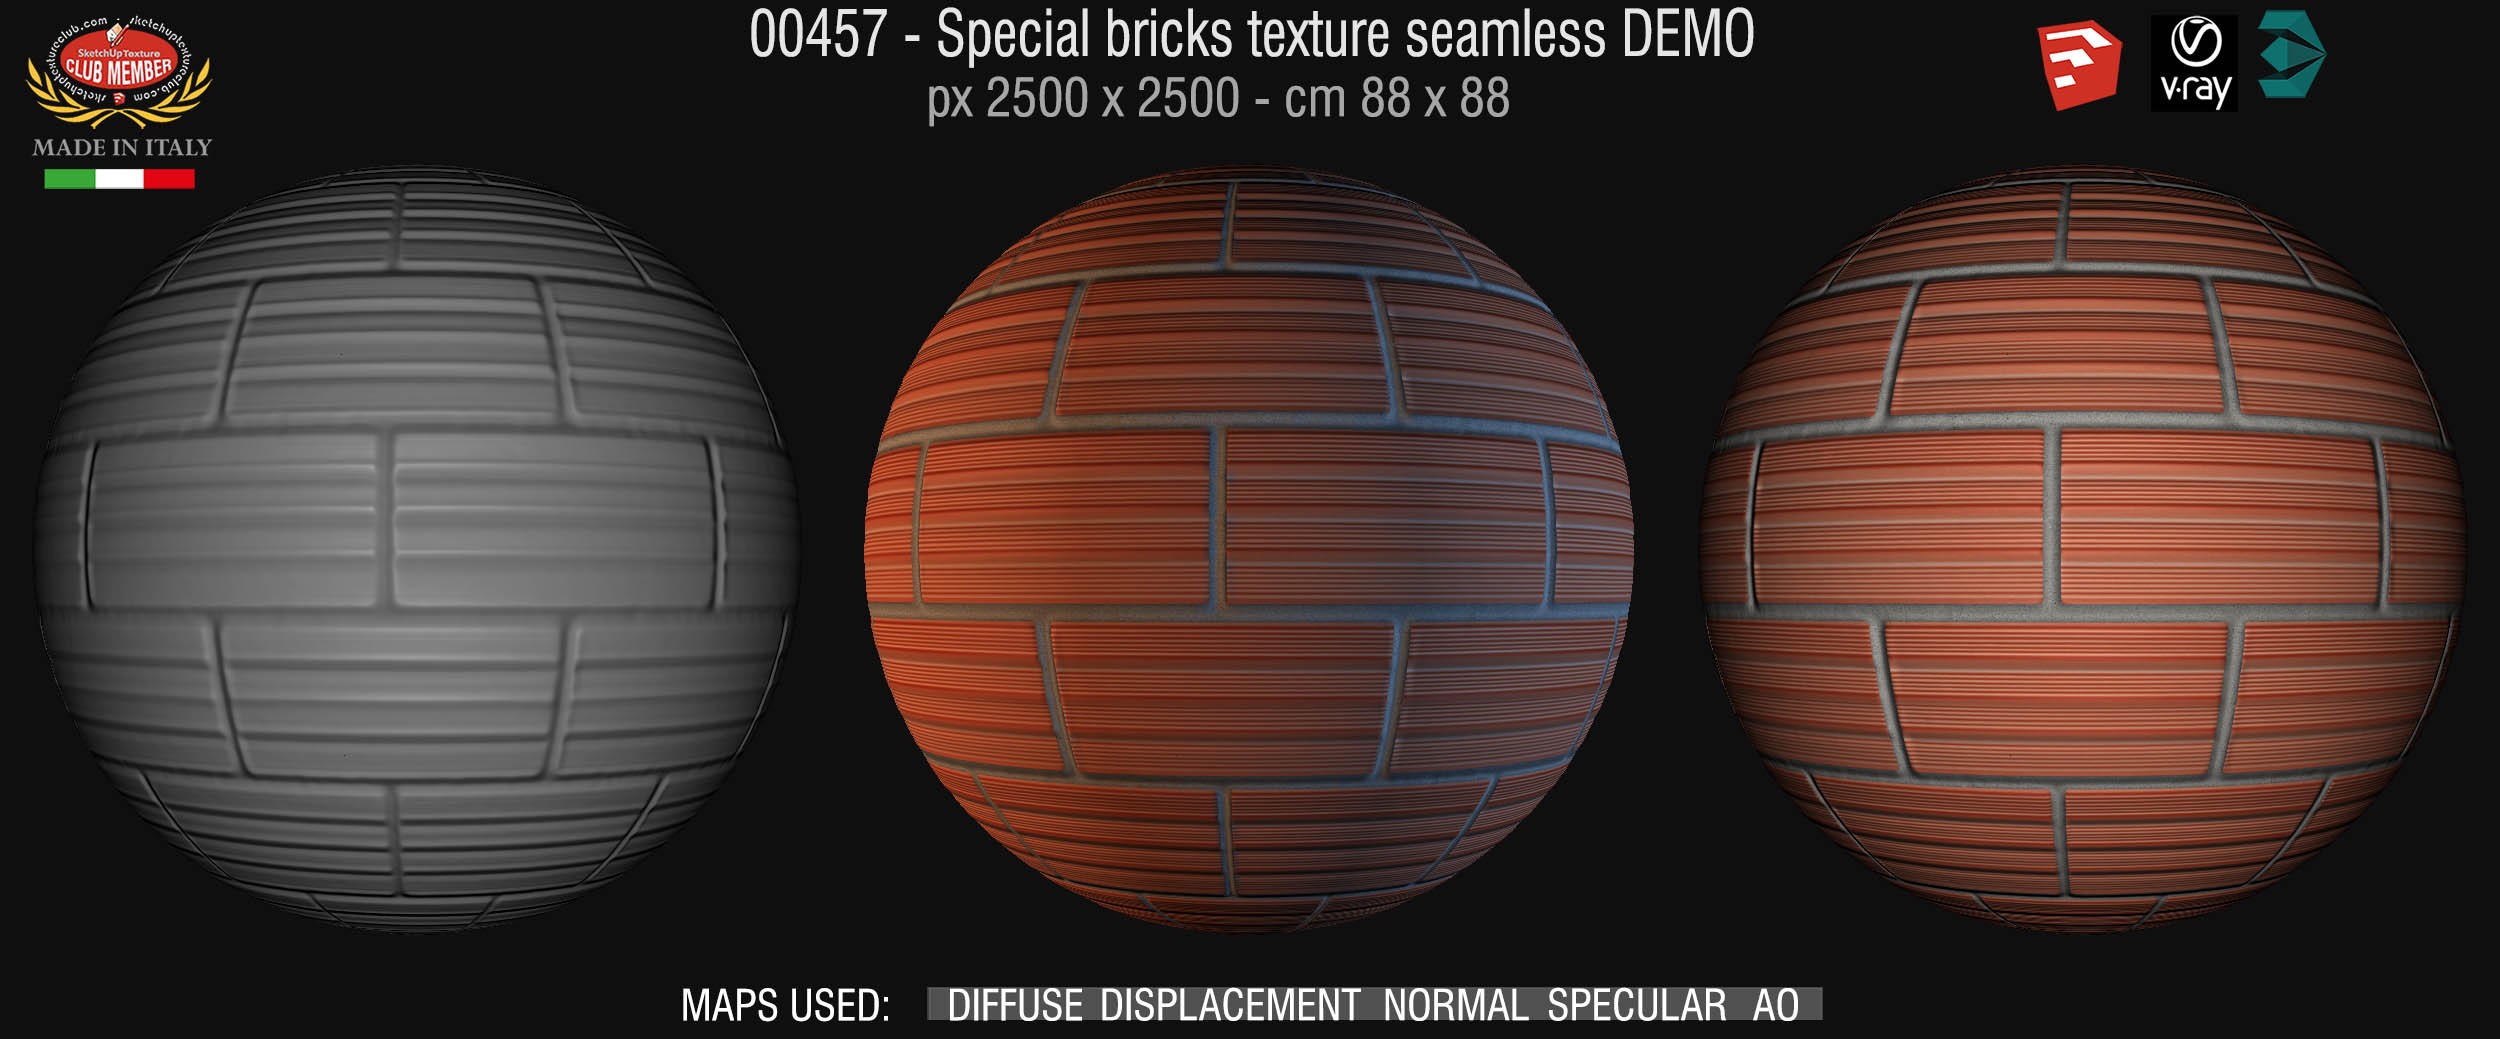 00457 Special bricks texture seamless + maps DEMO